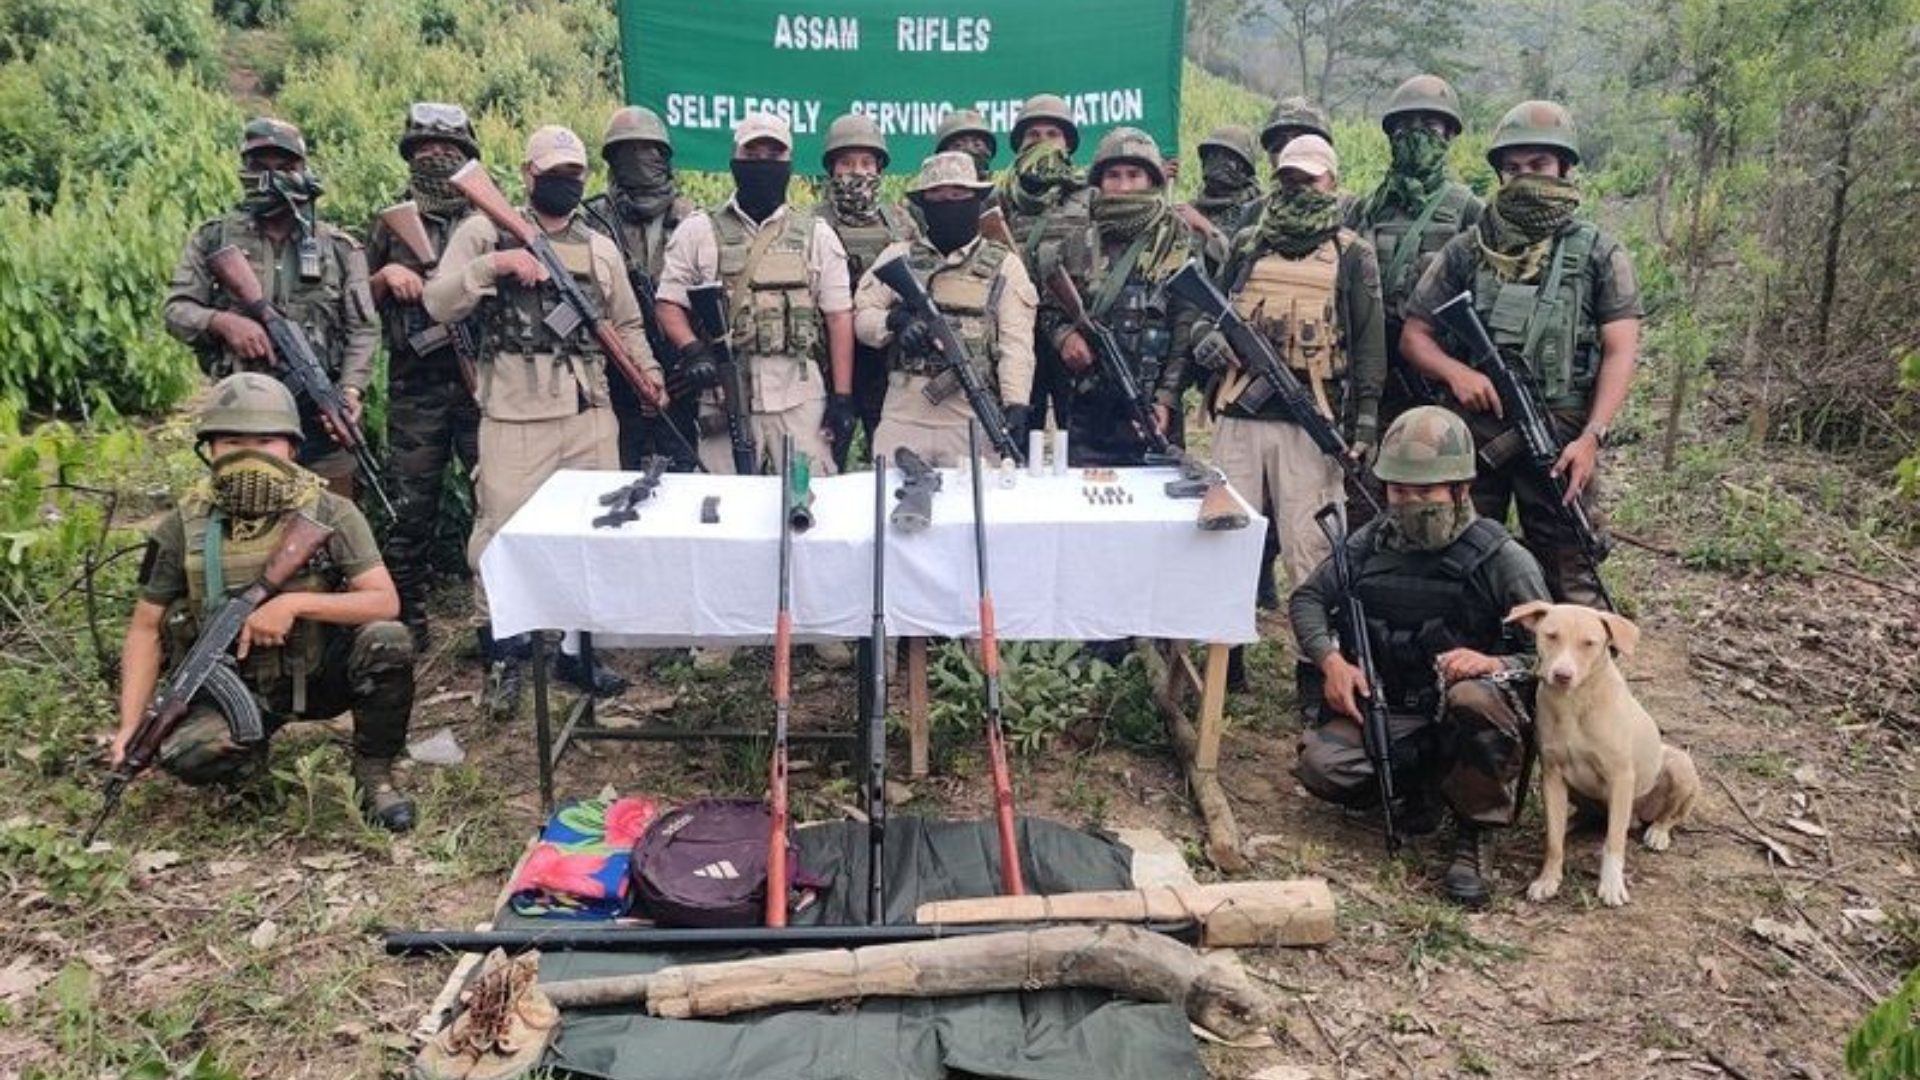 Assam Rifles Seize Large Arms Cache Near Myanmar Border